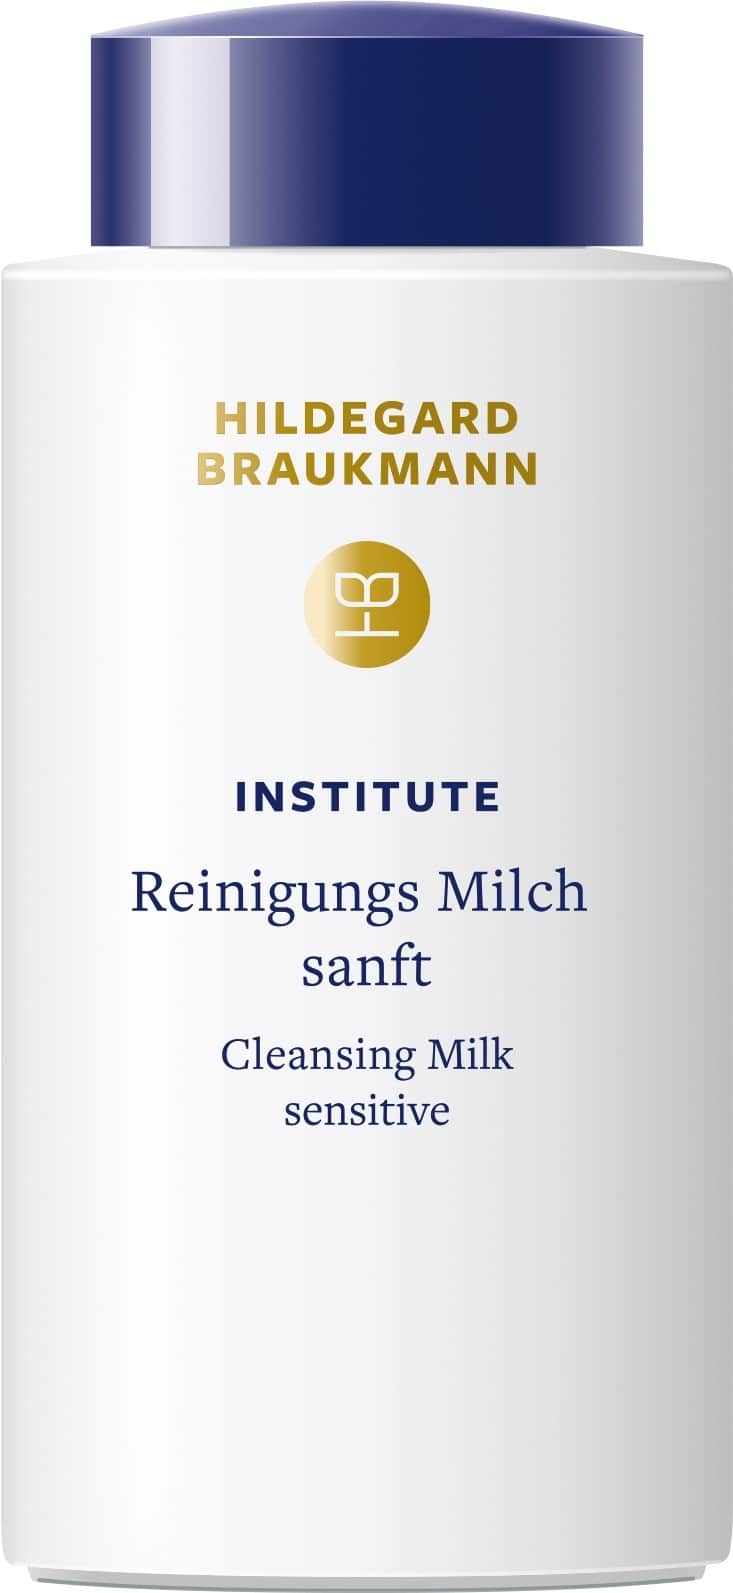 hildegard-braukmann-institute-reinigungs-milch-sanft